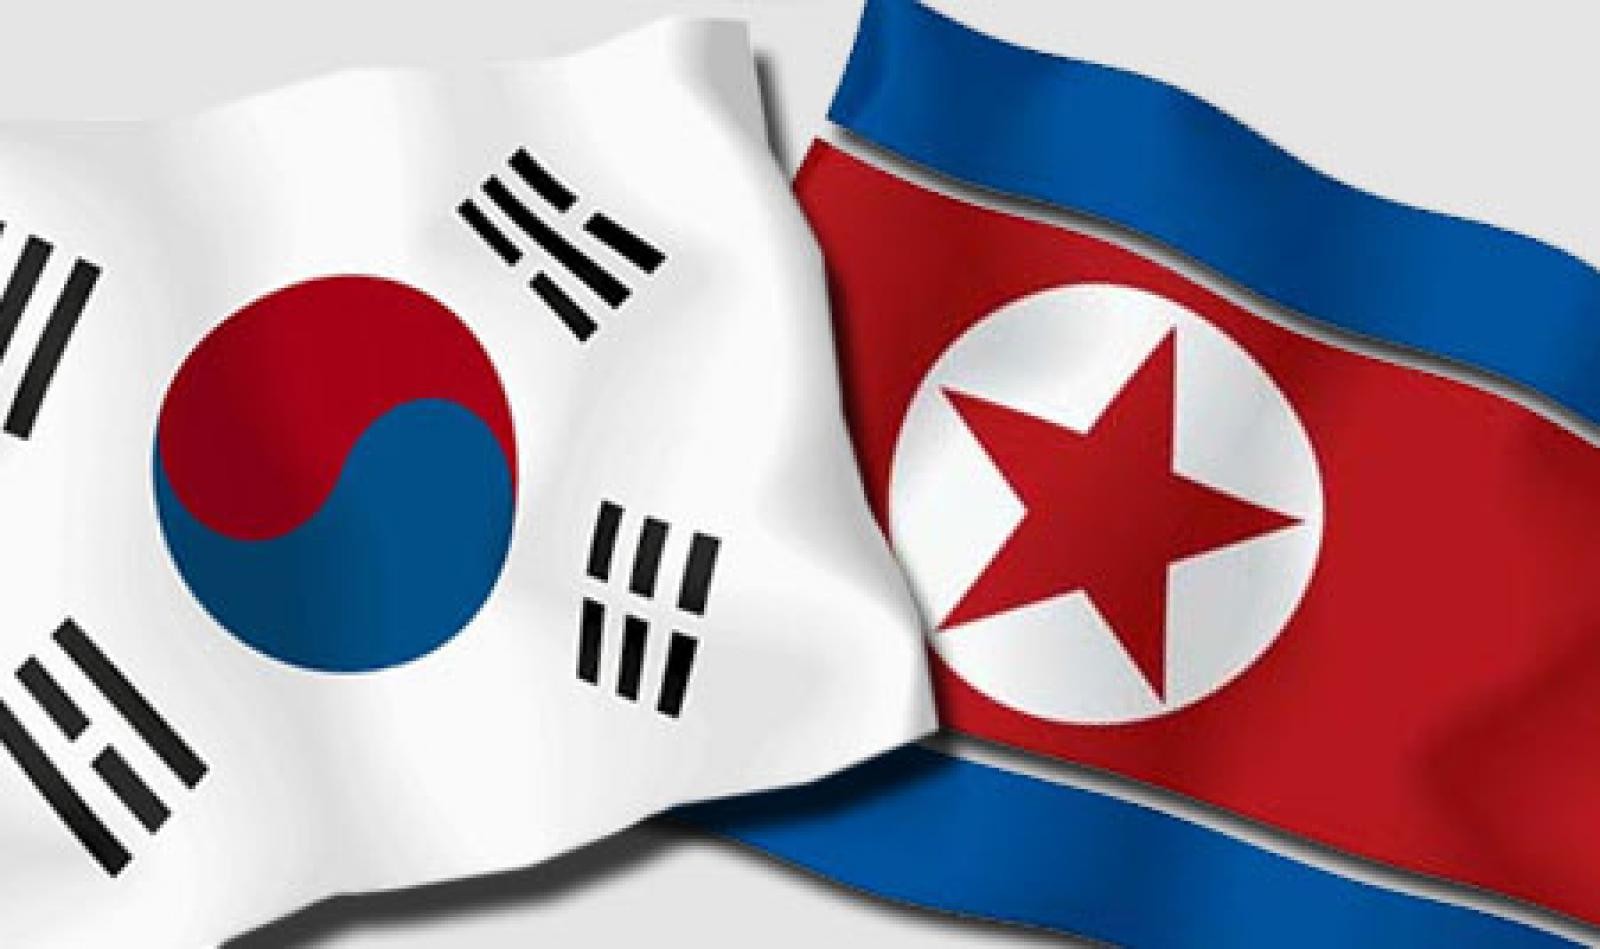 северная корея южная корея сравнение